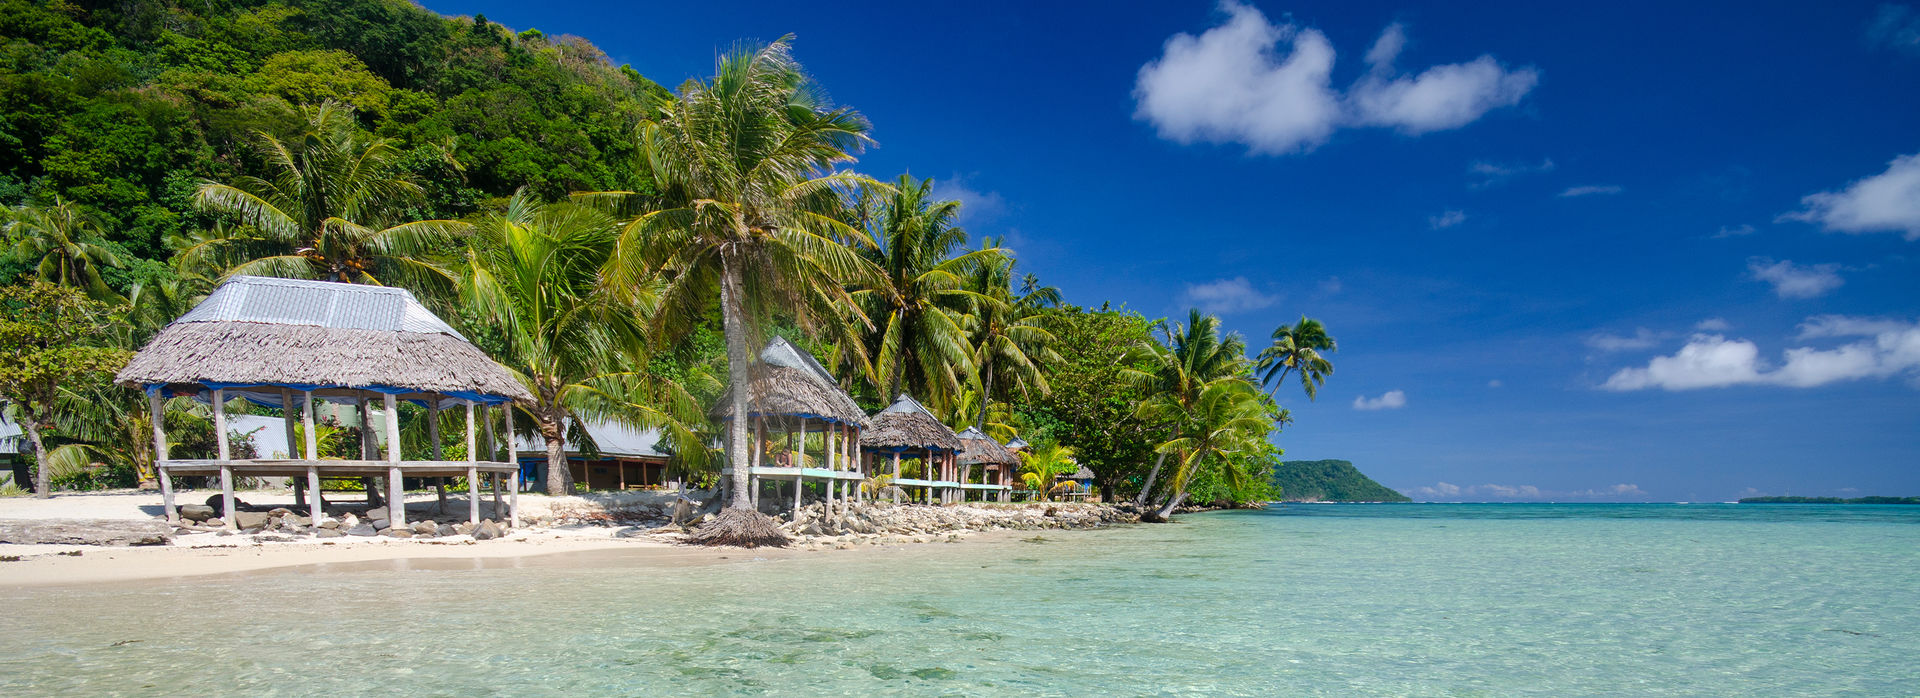 Stay in a beach fale in Samoa